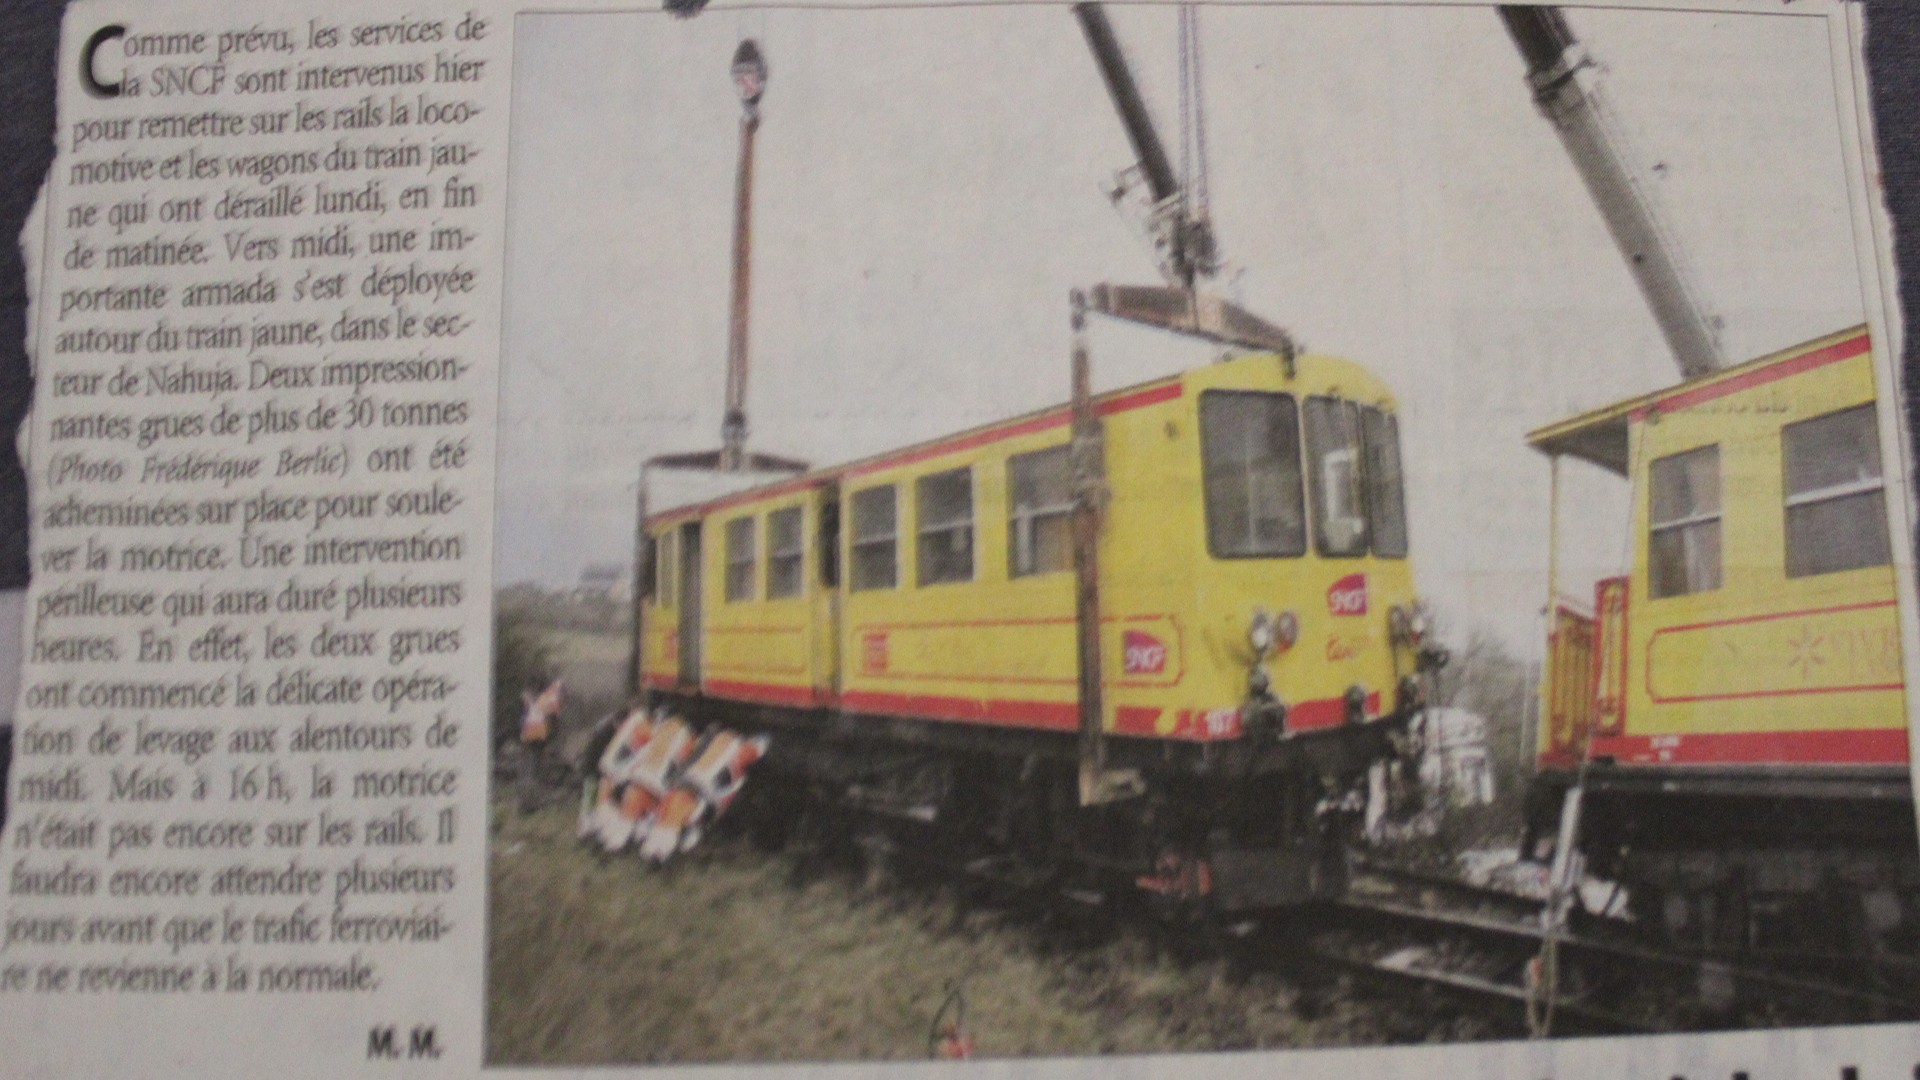 Article l independant deraillement du train jaune a nahuja octobre 2009